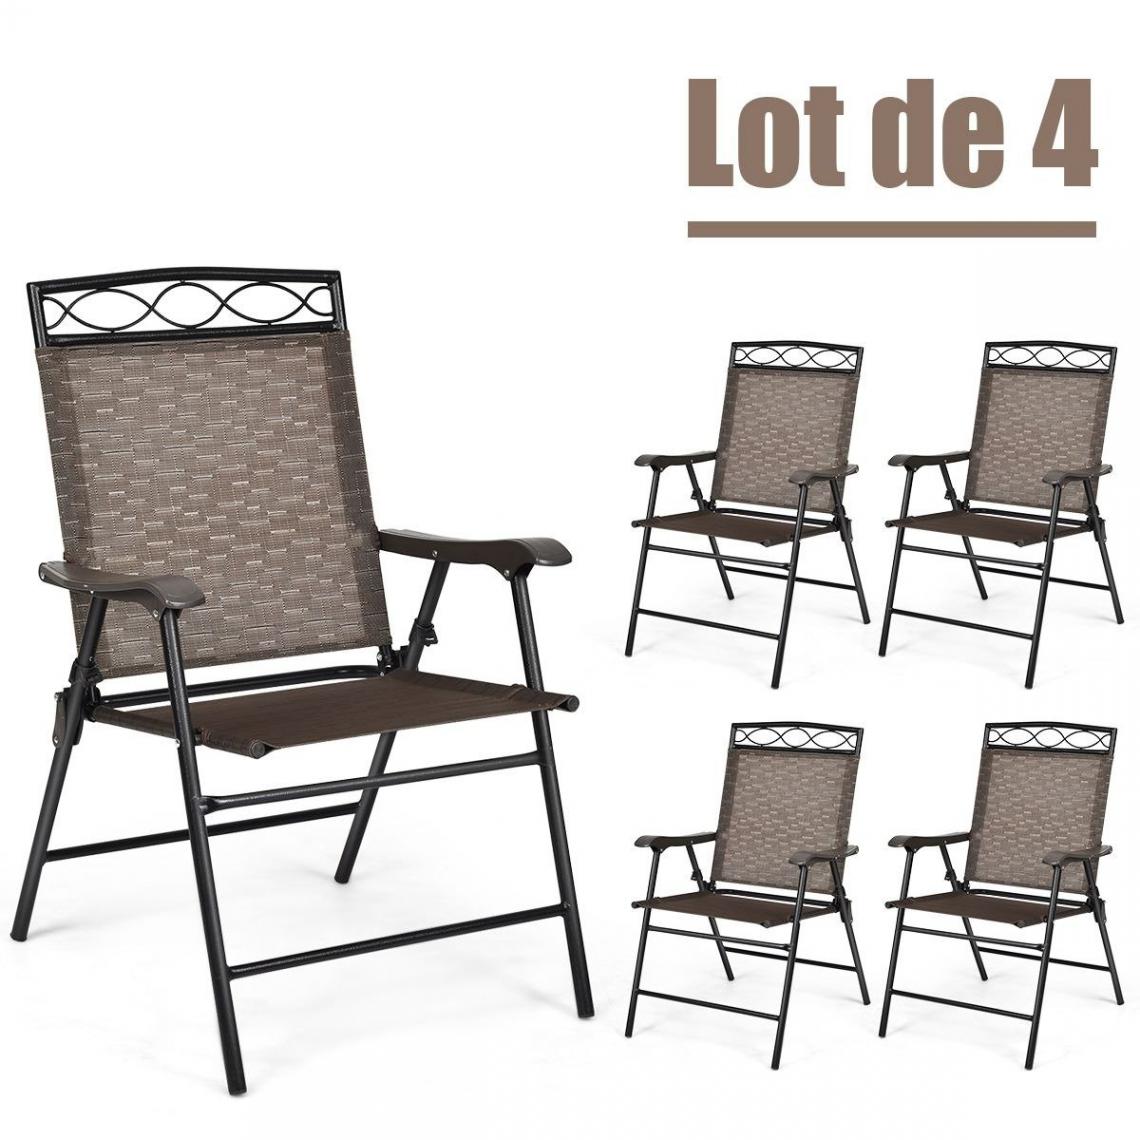 Decoshop26 - Lot de 4 chaises de jardin en fer et en textilène pliantes avec accoudoirs 48x64x90 cm 20_0000748 - Chaises de jardin